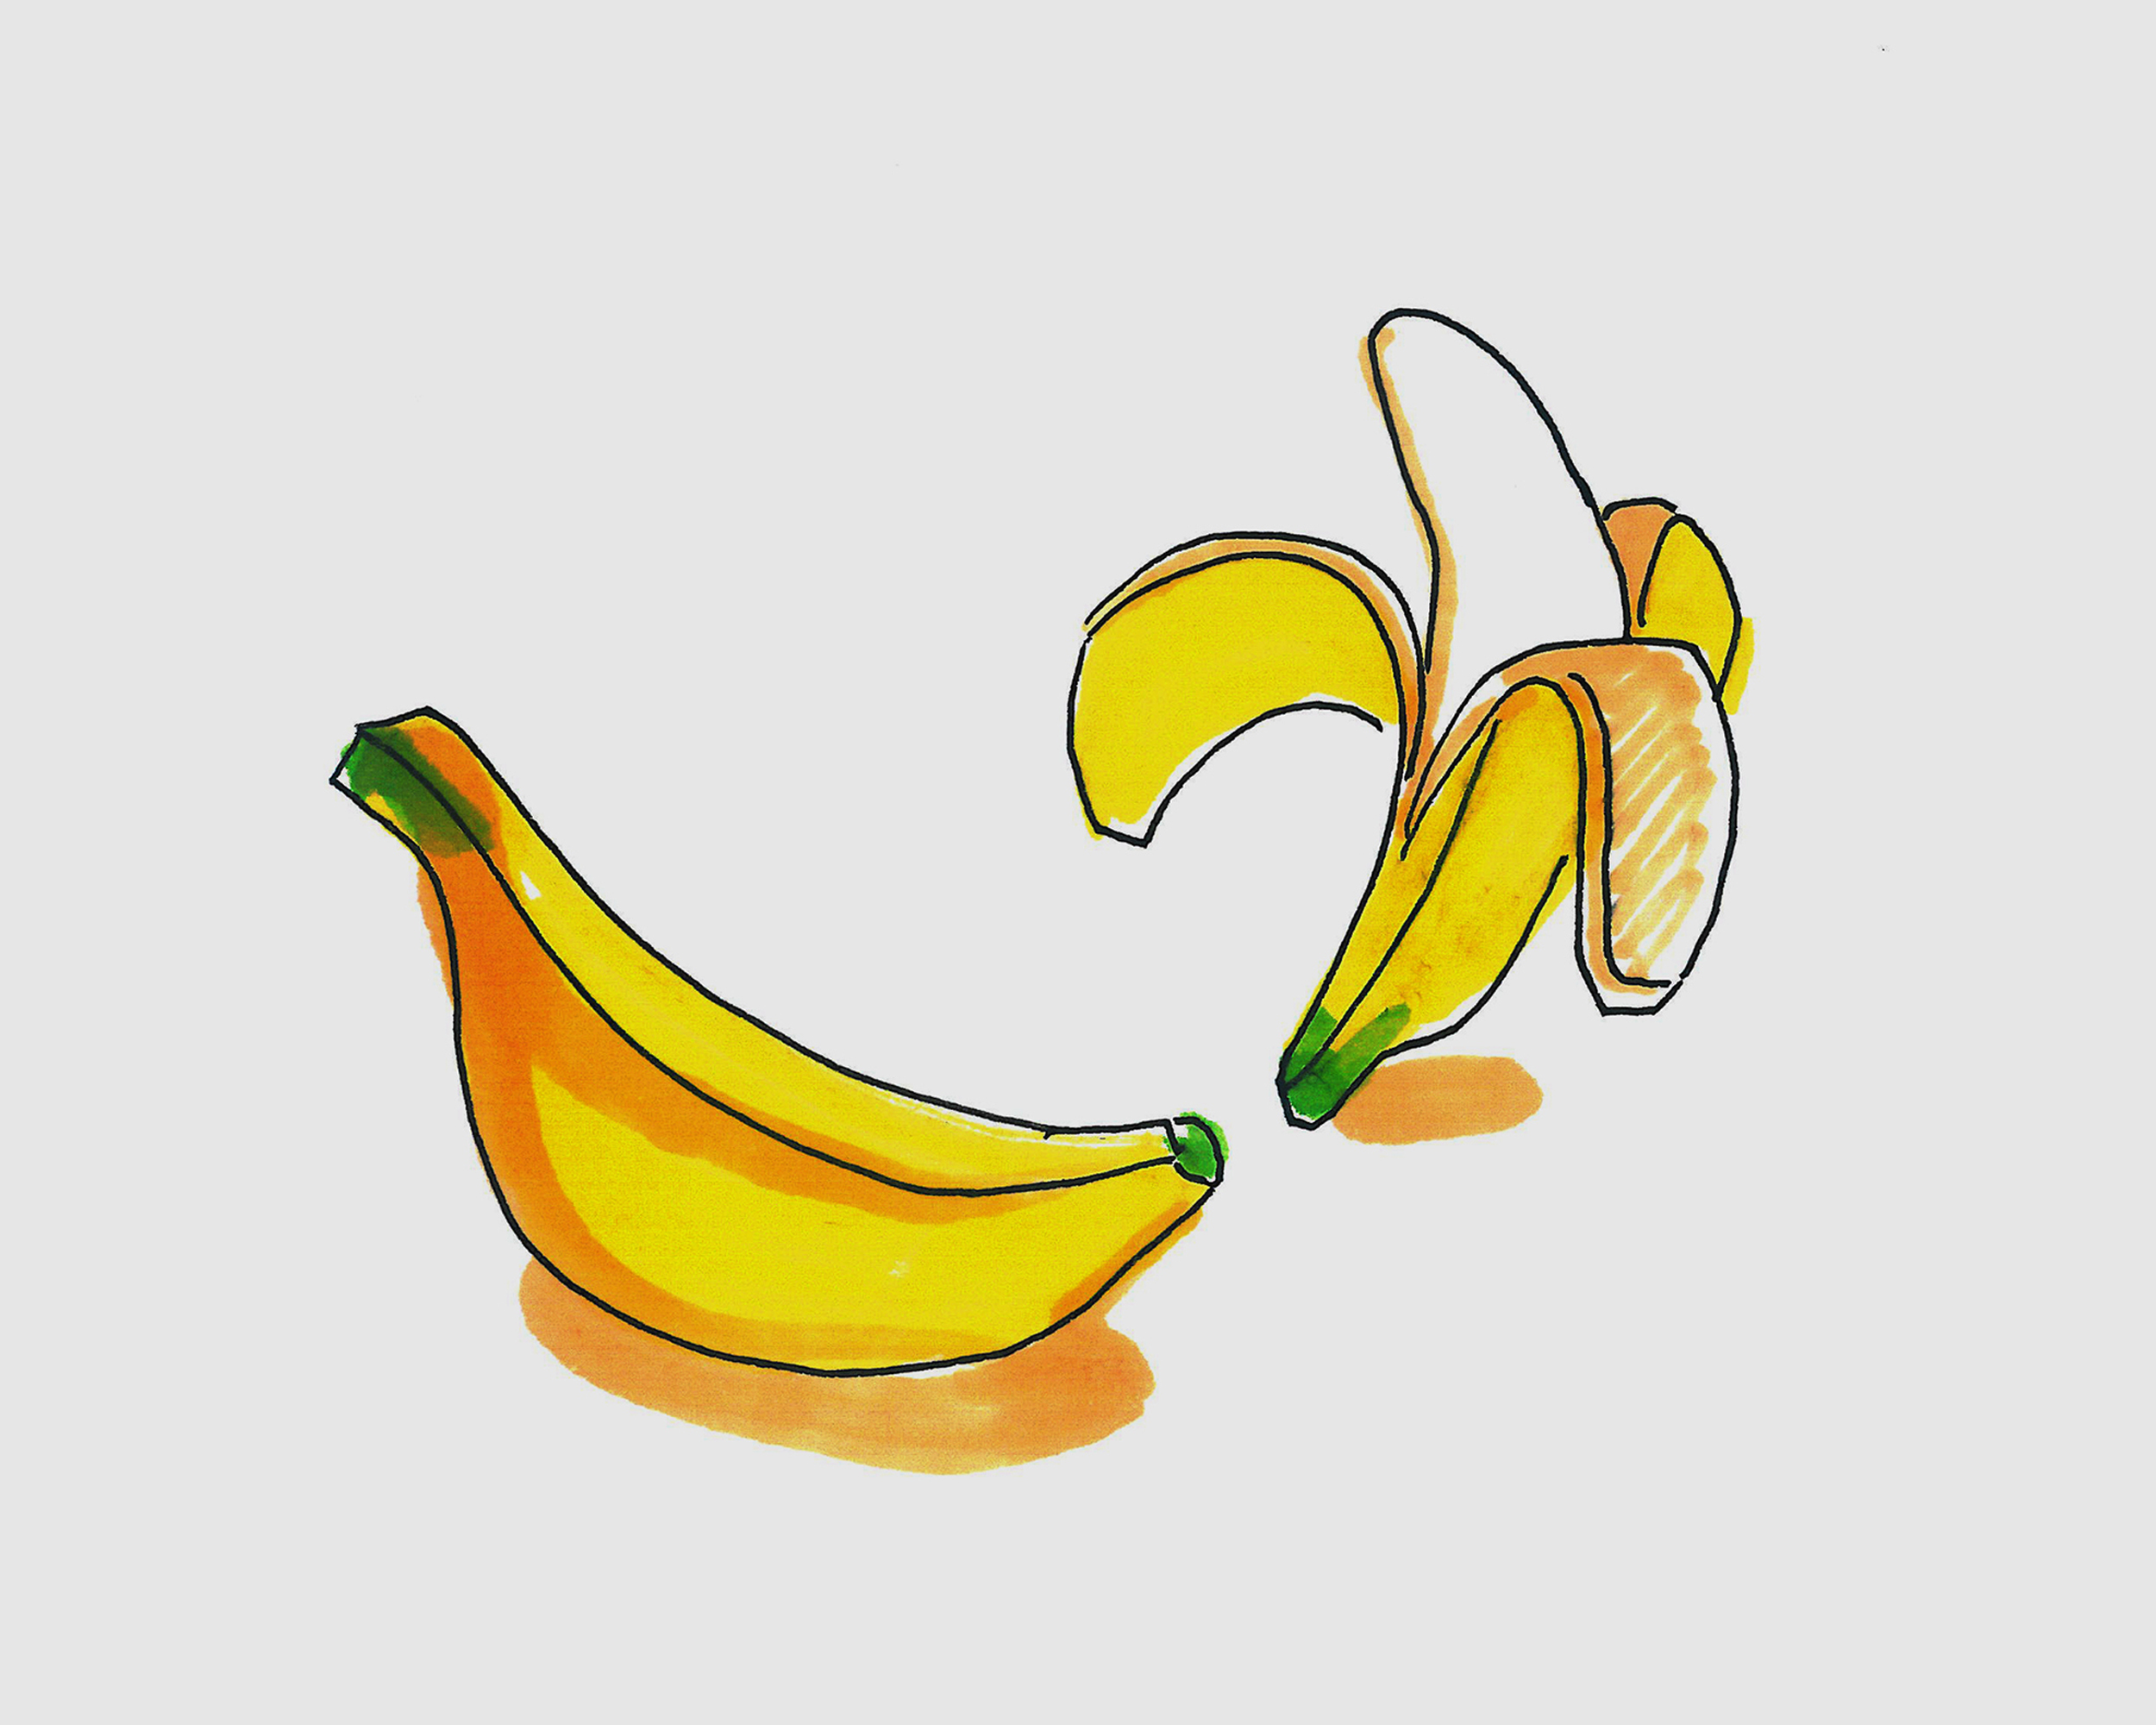 简单美术大全 创意简笔画香蕉的画法图解 咿咿呀呀儿童手工网